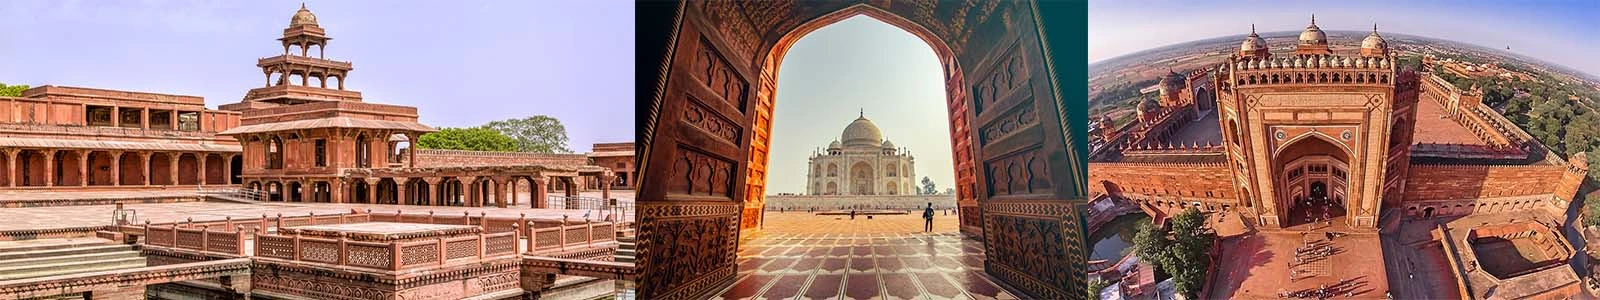 Private 2 Days Taj Mahal Trip with Fatehpur Sikri from New Delhi